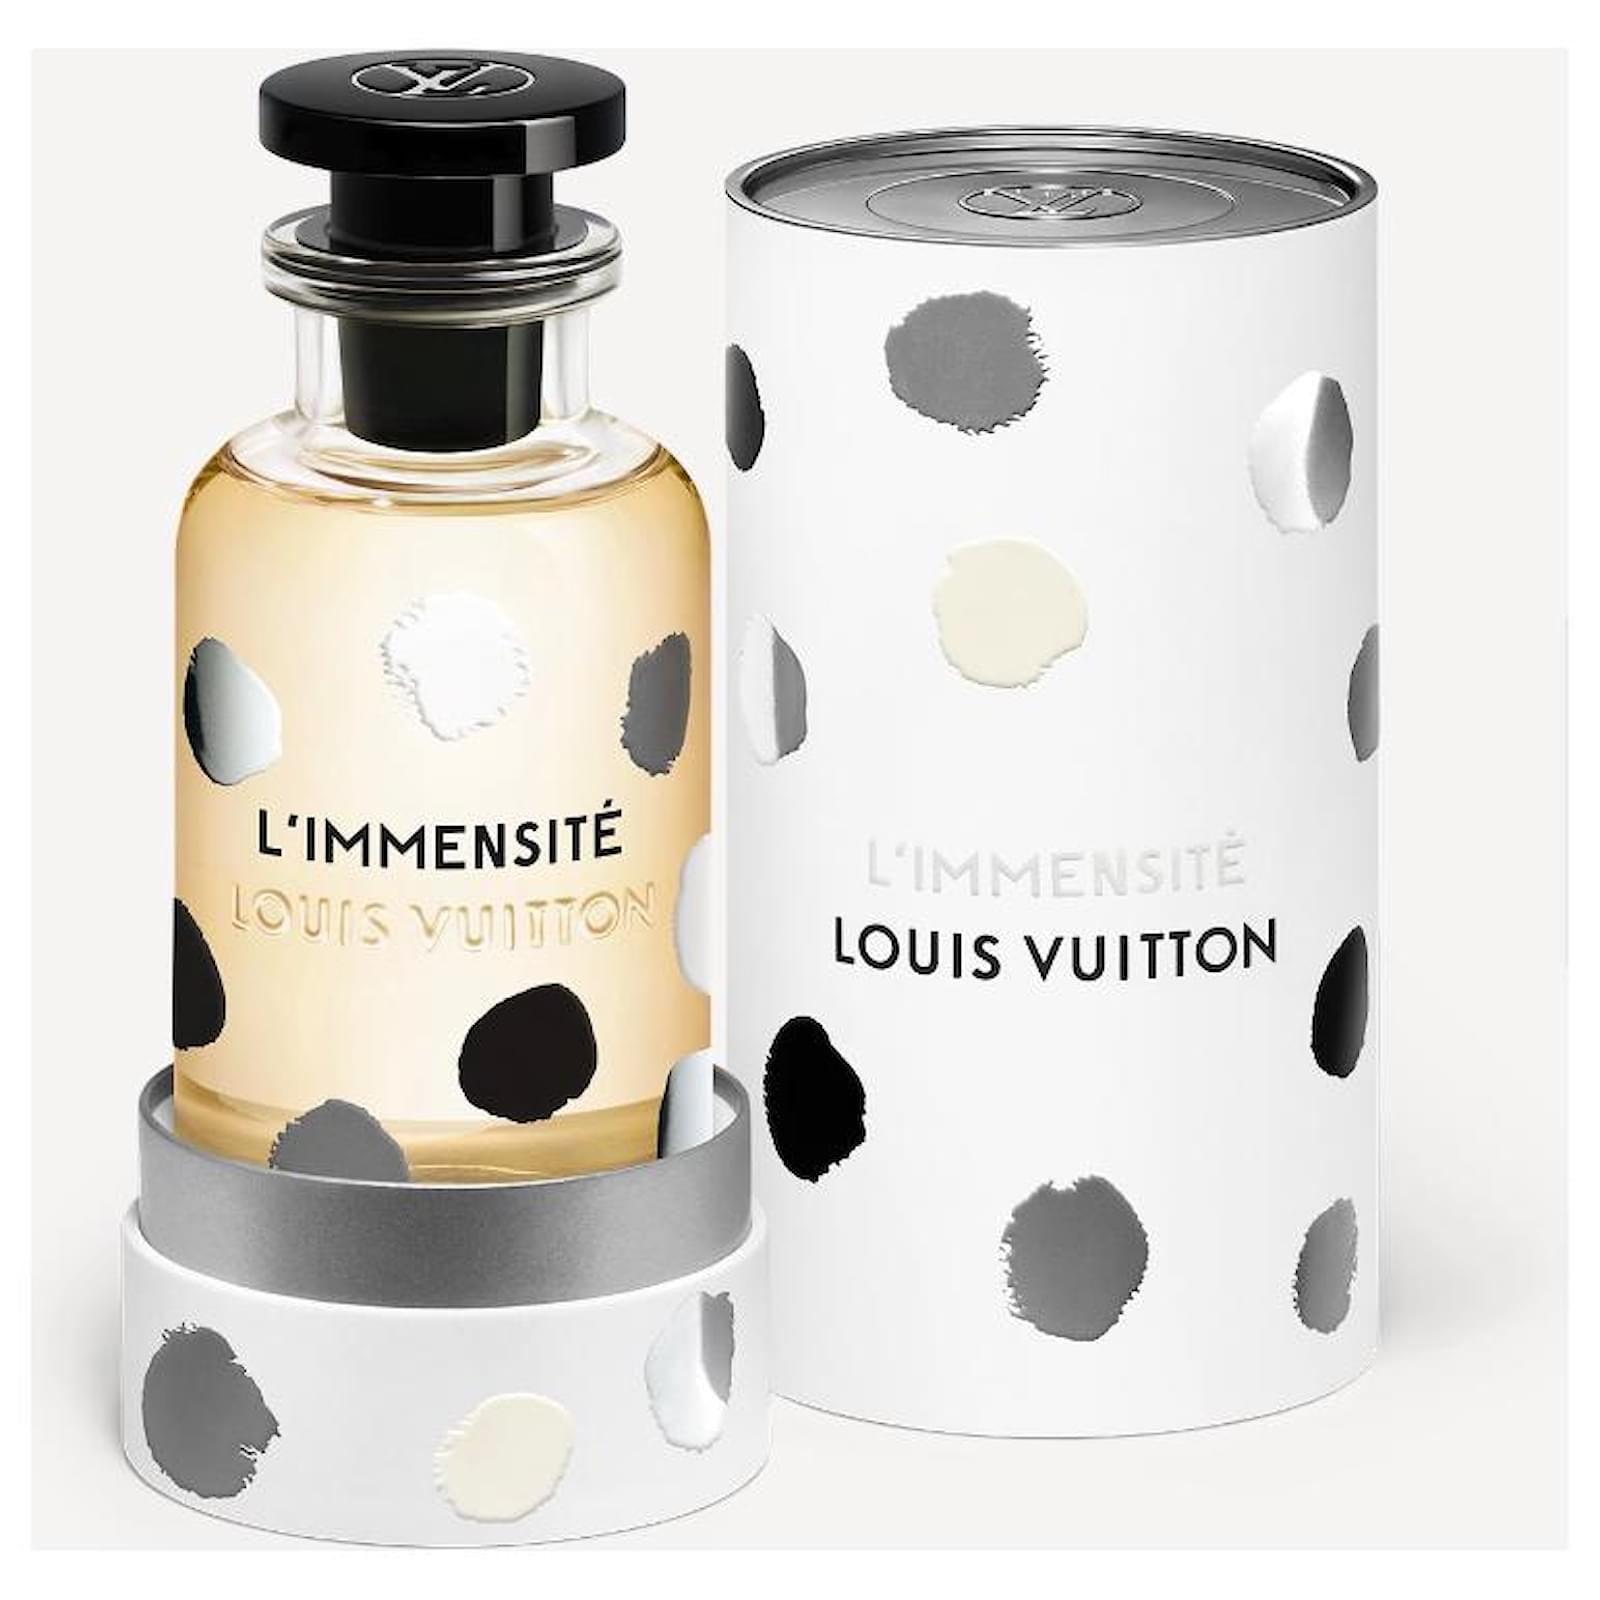 Nước hoa LIMMENSITÉ PERFUME  nốt hương tuyệt vời của Louis Vuitton   Centimetvn